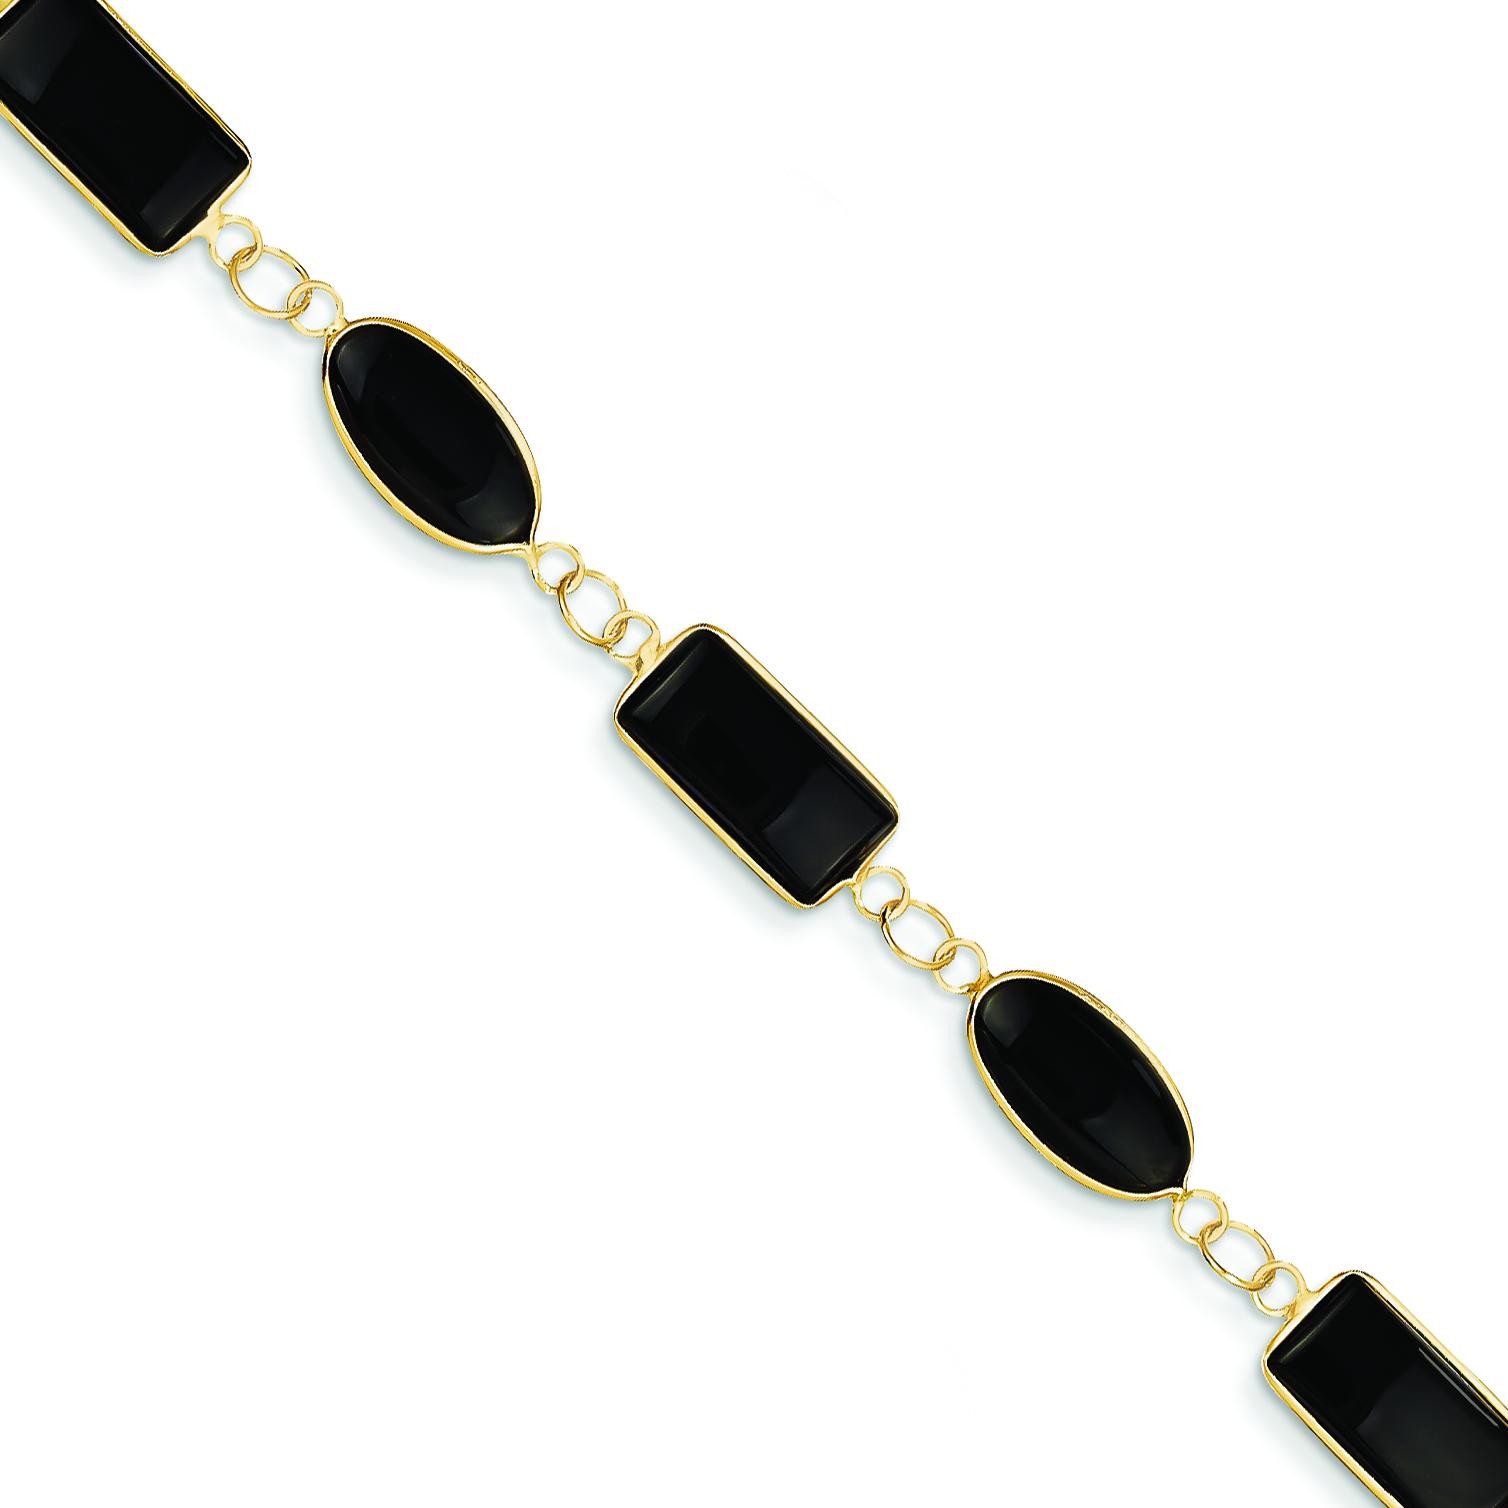 Polished Genuine Fancy Onyx Bracelet in 14k Yellow Gold